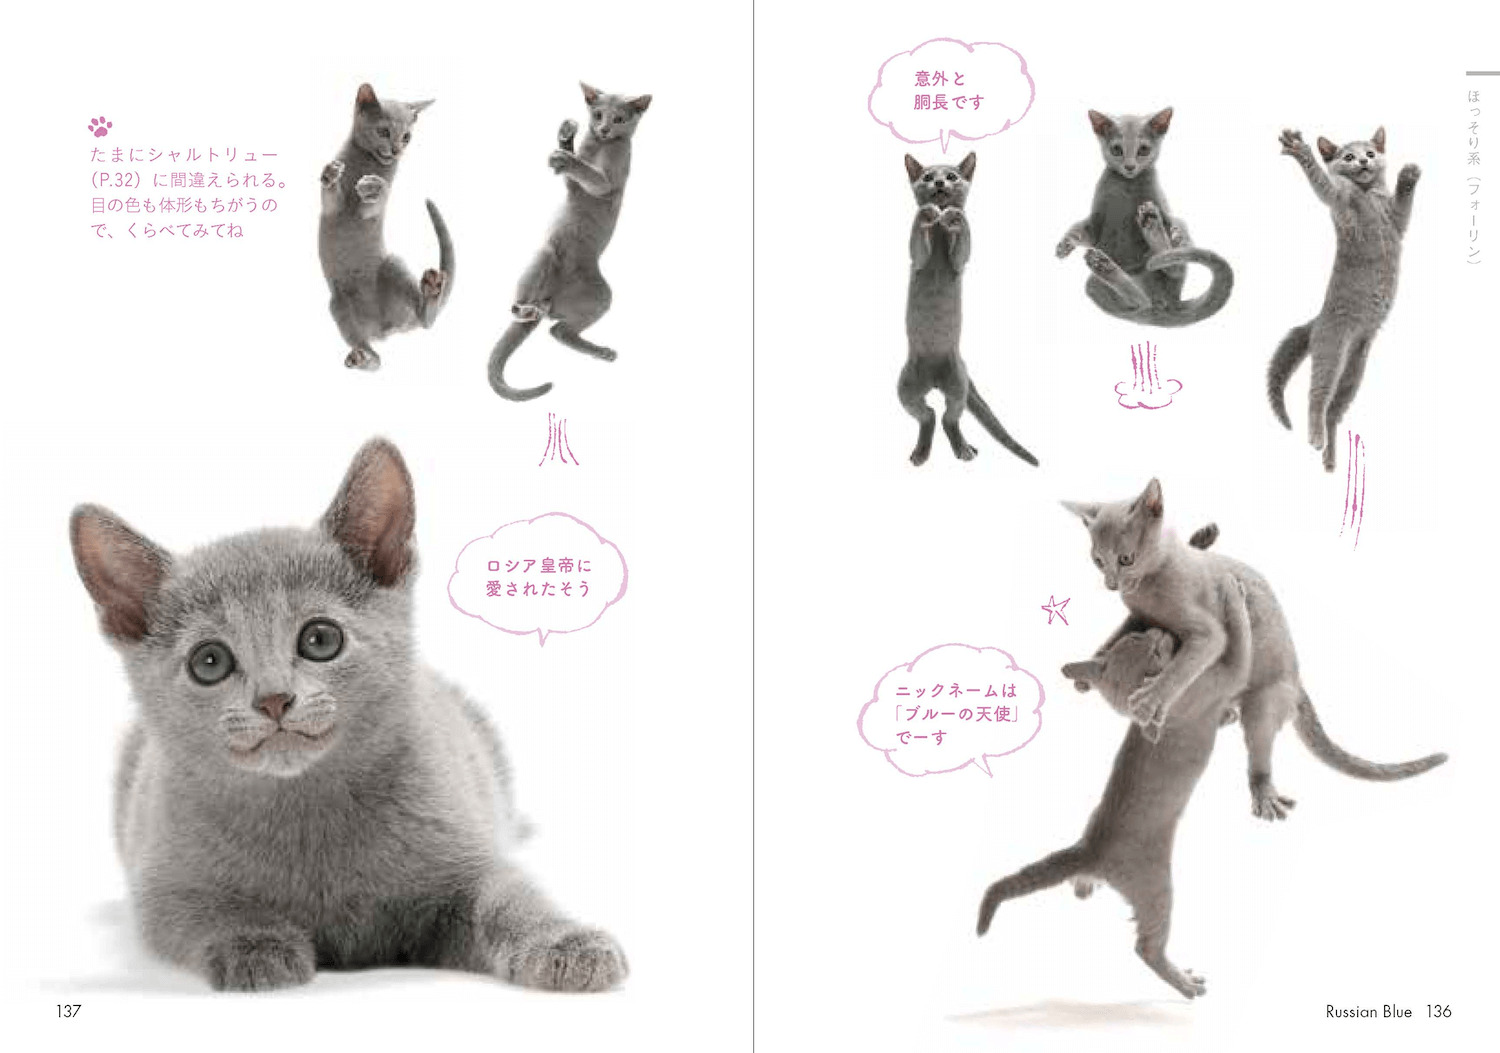 人気写真家の福田豊文さんが撮影した猫の写真を収録 by 『ときめく 猫図鑑』